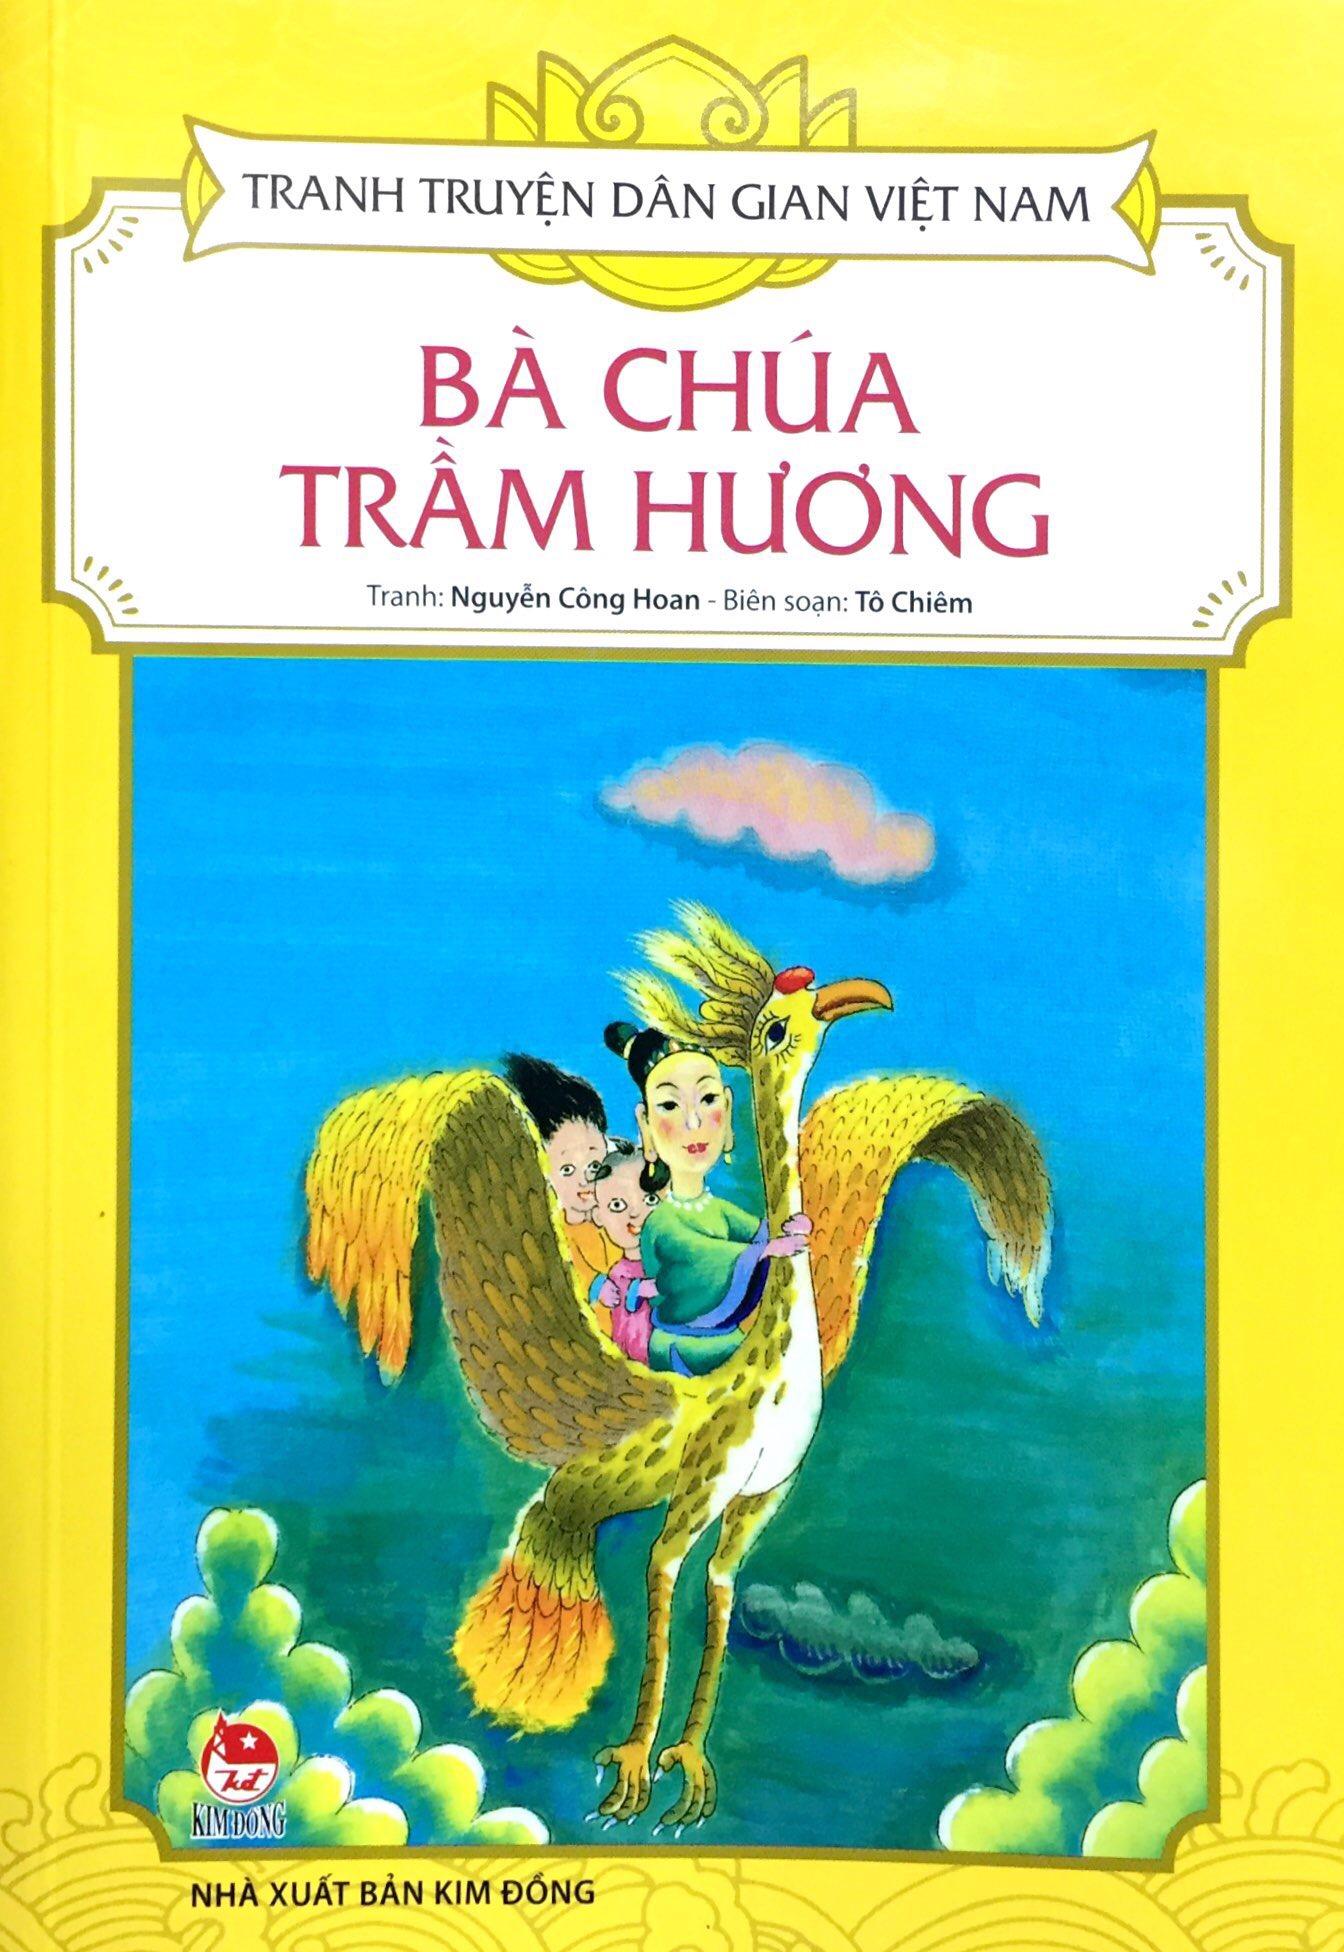 Tranh Truyện Dân Gian Việt Nam - Bà Chúa Trầm Hương